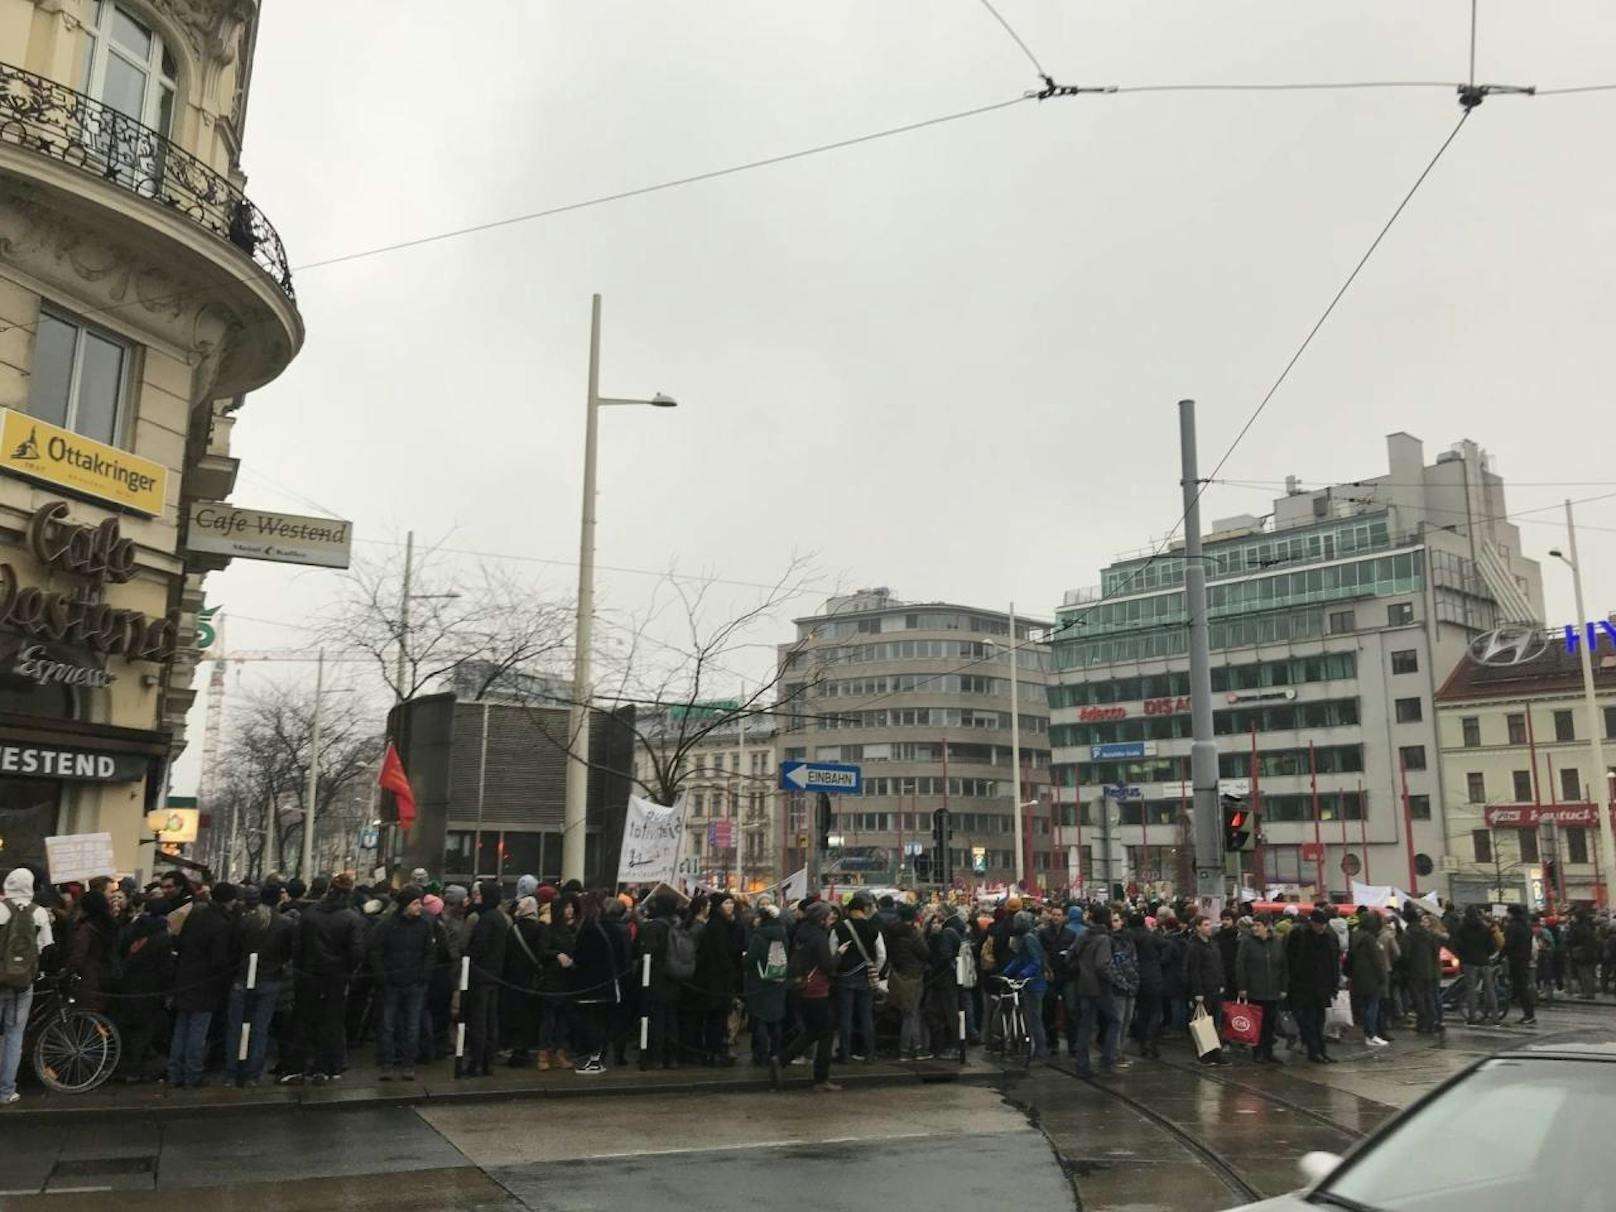 Demo in Wien am Samstag (13.1.2018): Demonstranten auf der Mariahilferstraße